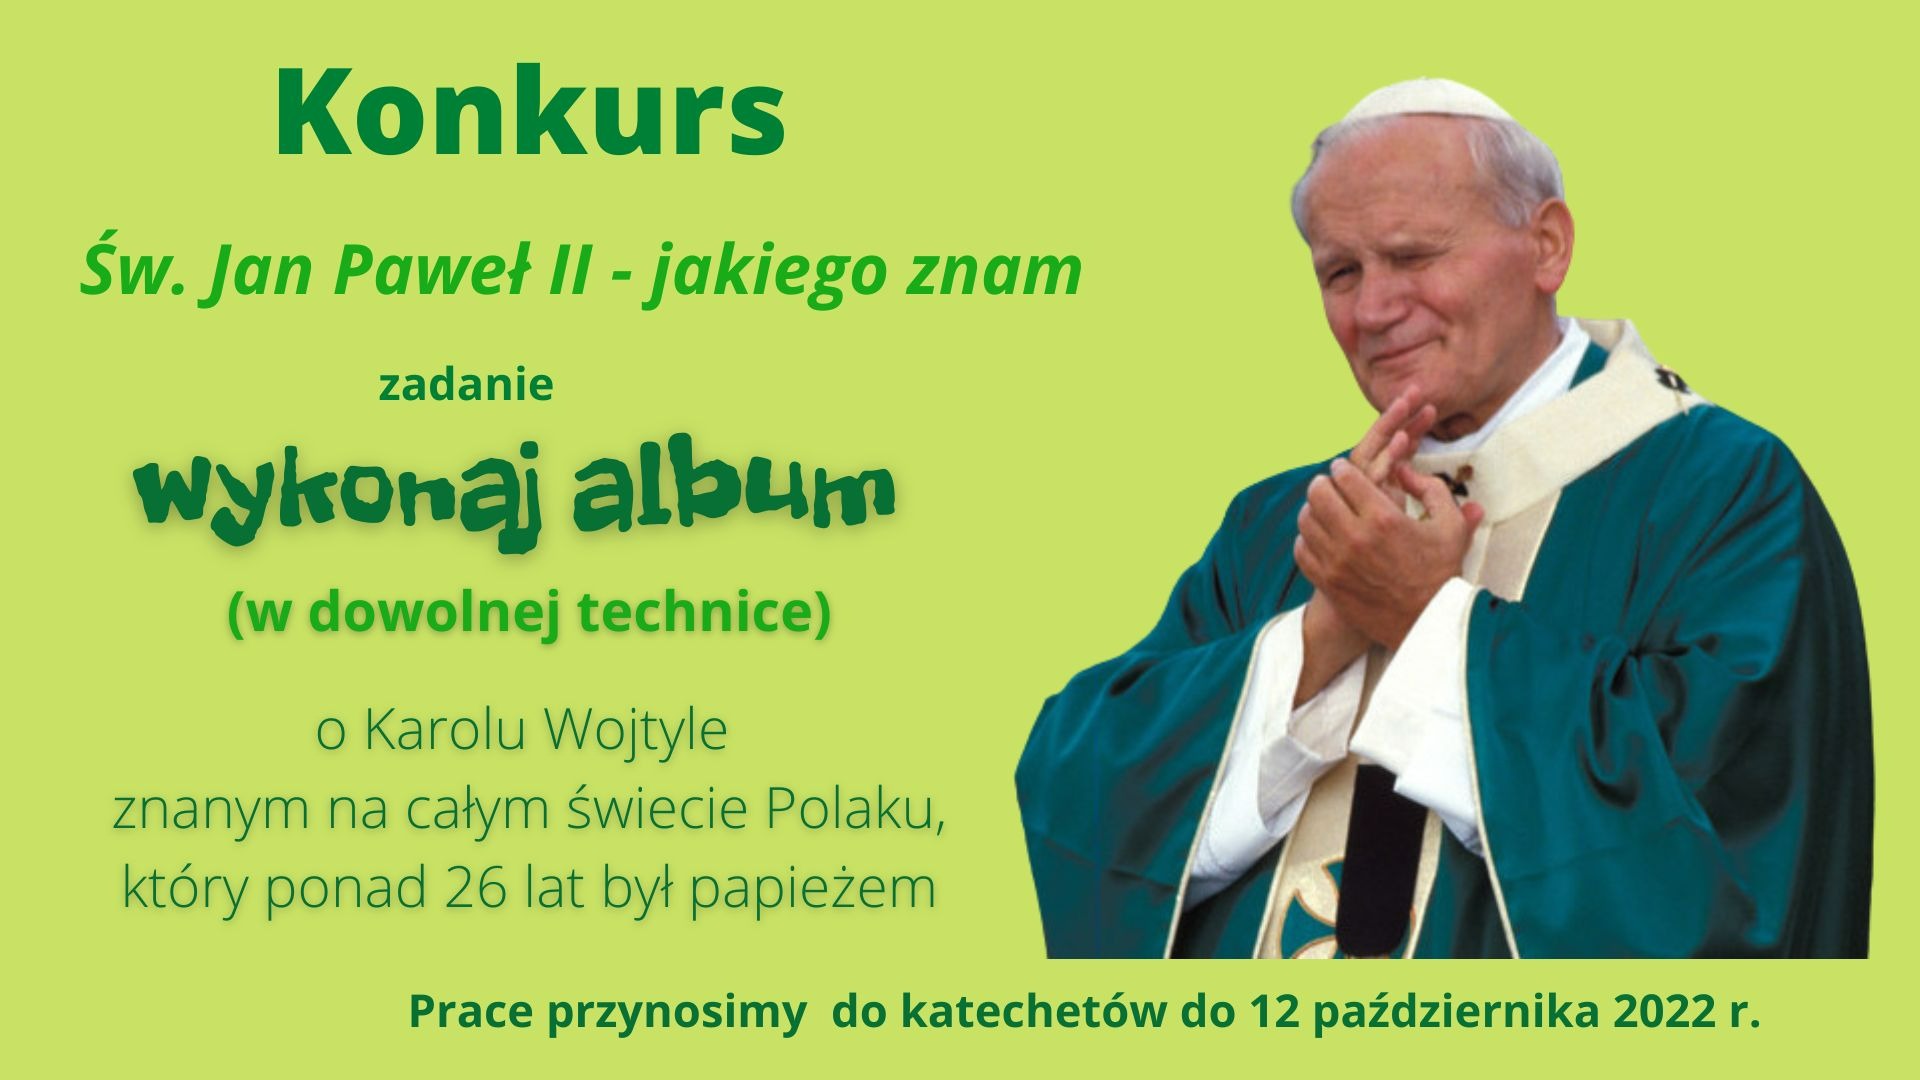 Konkurs "Św. Jan Paweł II - jakiego znam" - Obrazek 1